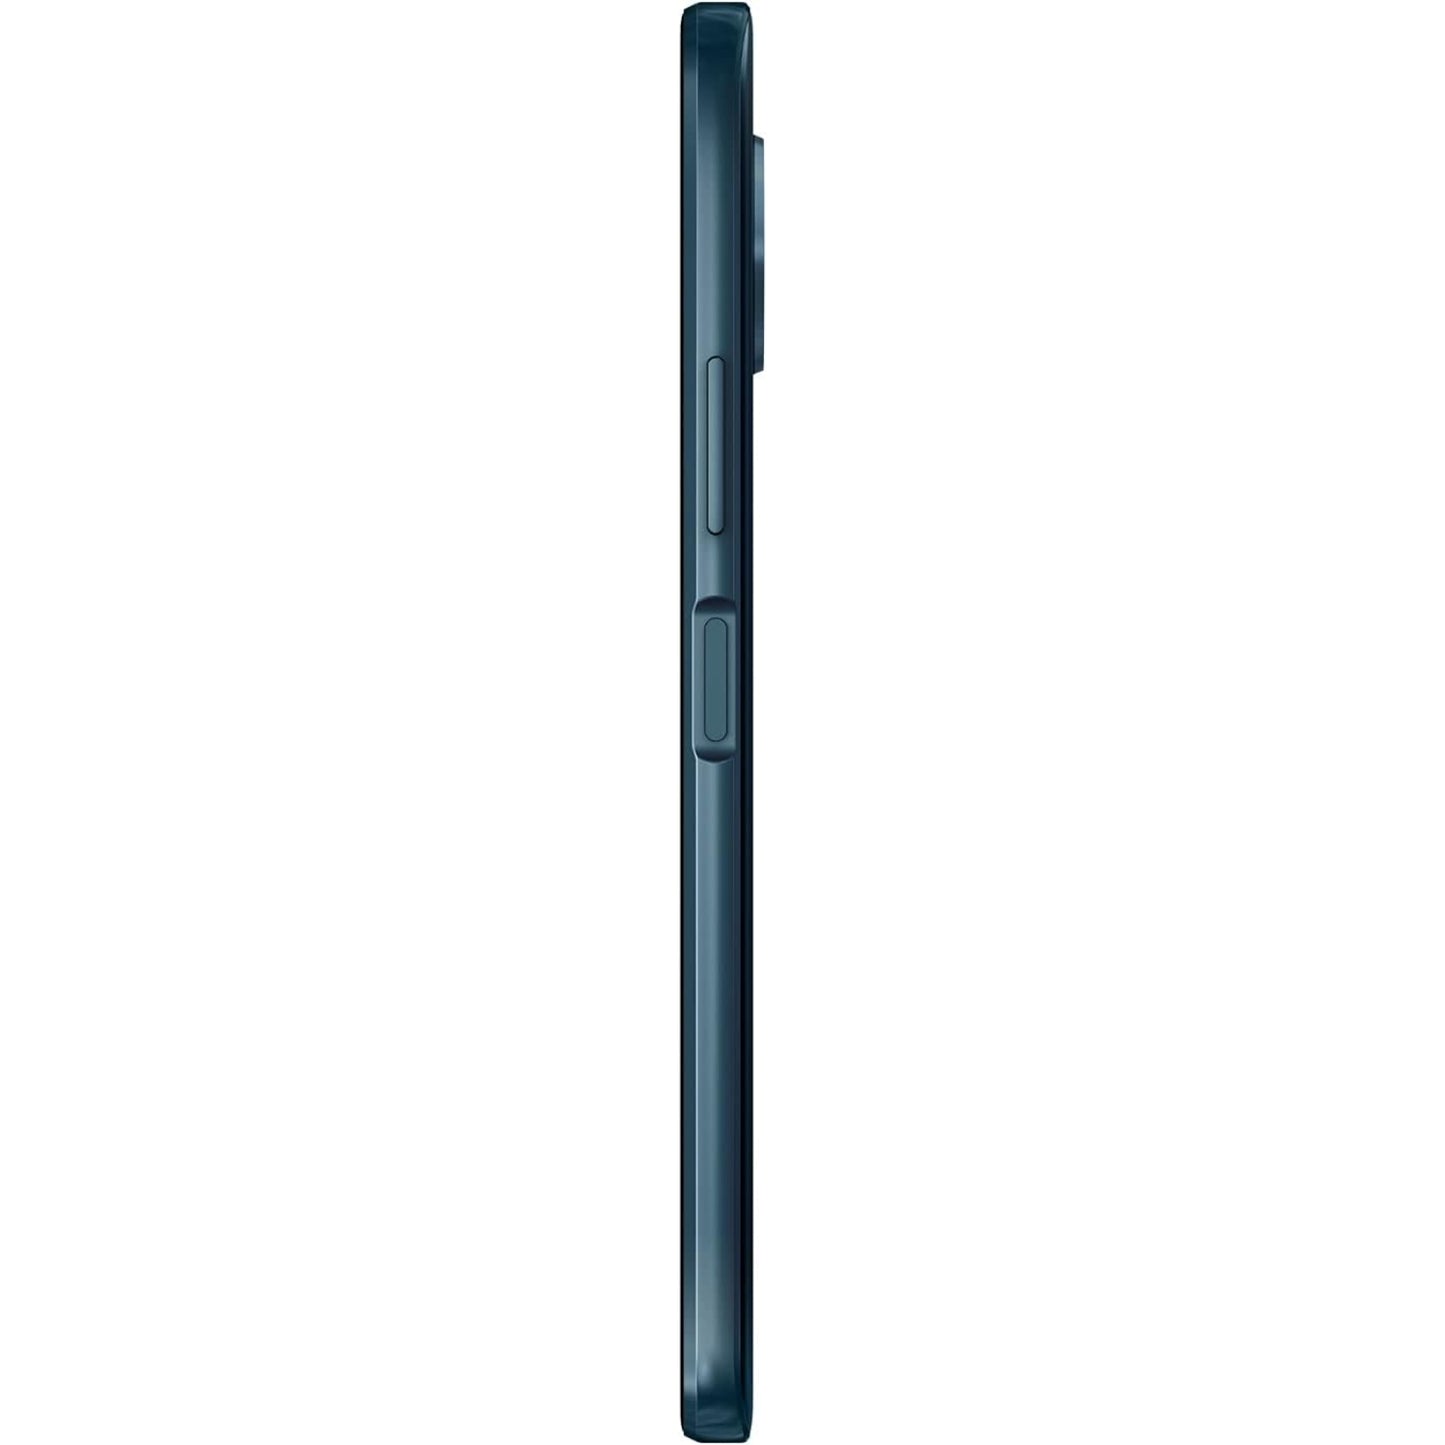 Nokia G50 Dual TA-1361 128G O.Blue 6GB - MyMobile